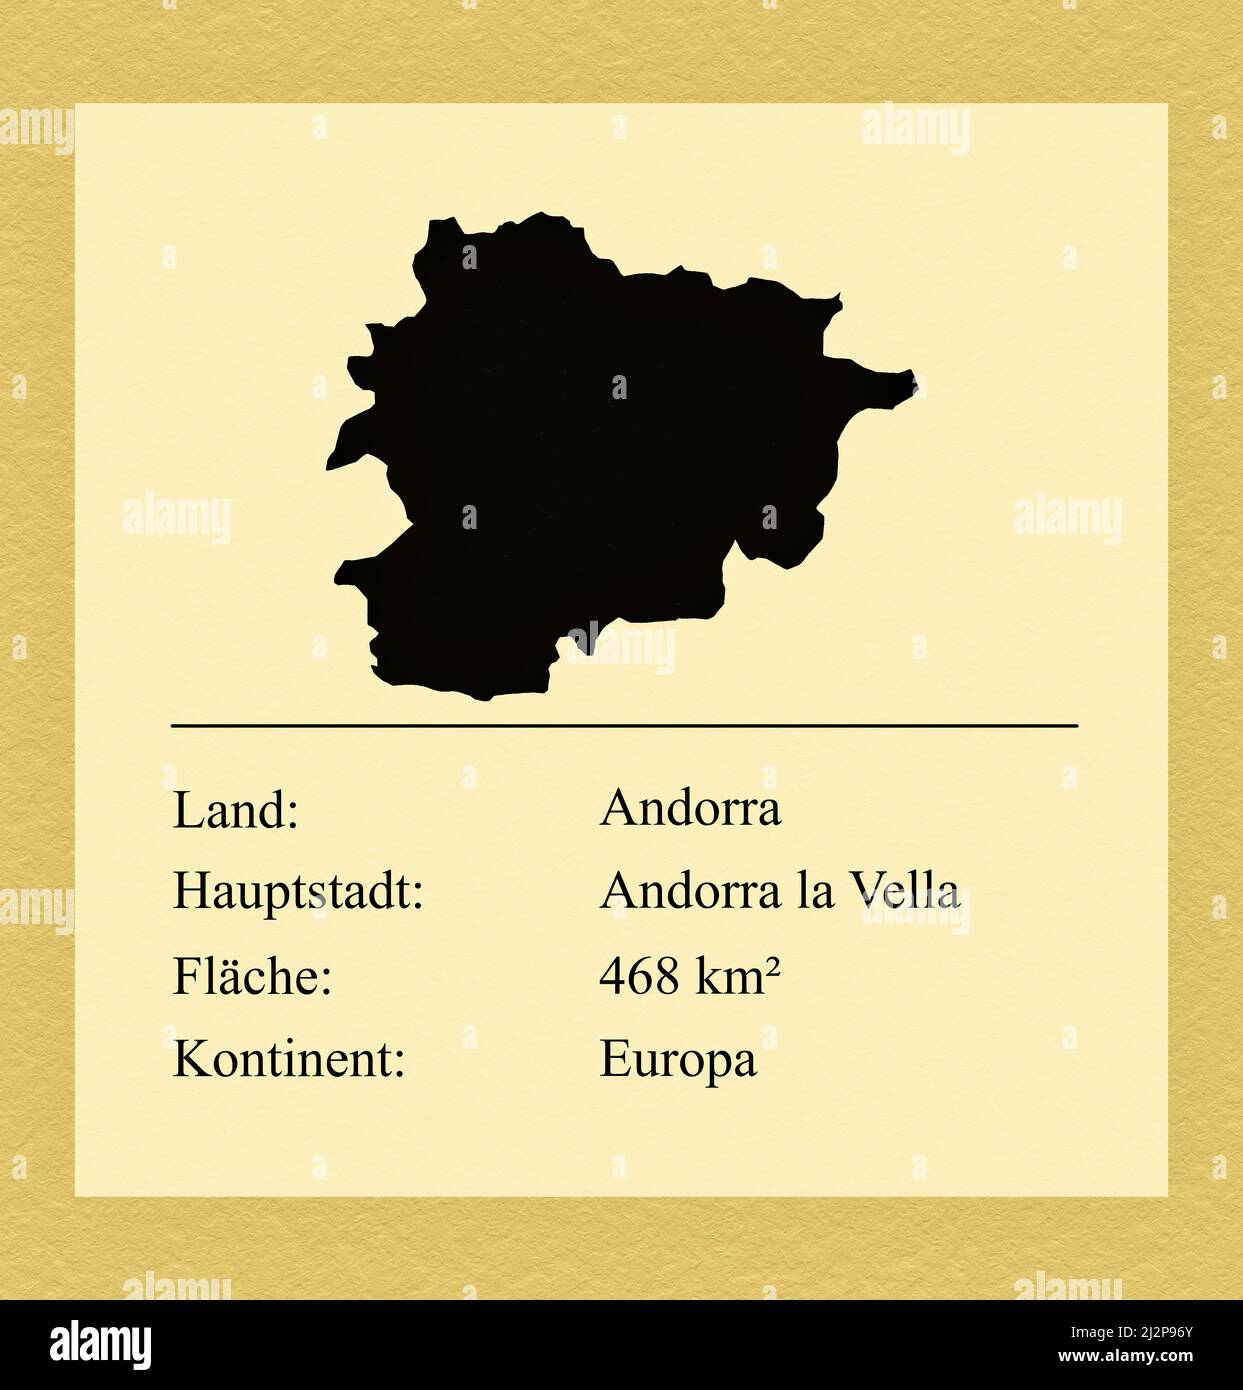 Umrisse des Landes Andorra, darunter ein kleiner Steckbrief mit Ländernamen, Hauptstadt, Fläche und Kontinent Foto de stock